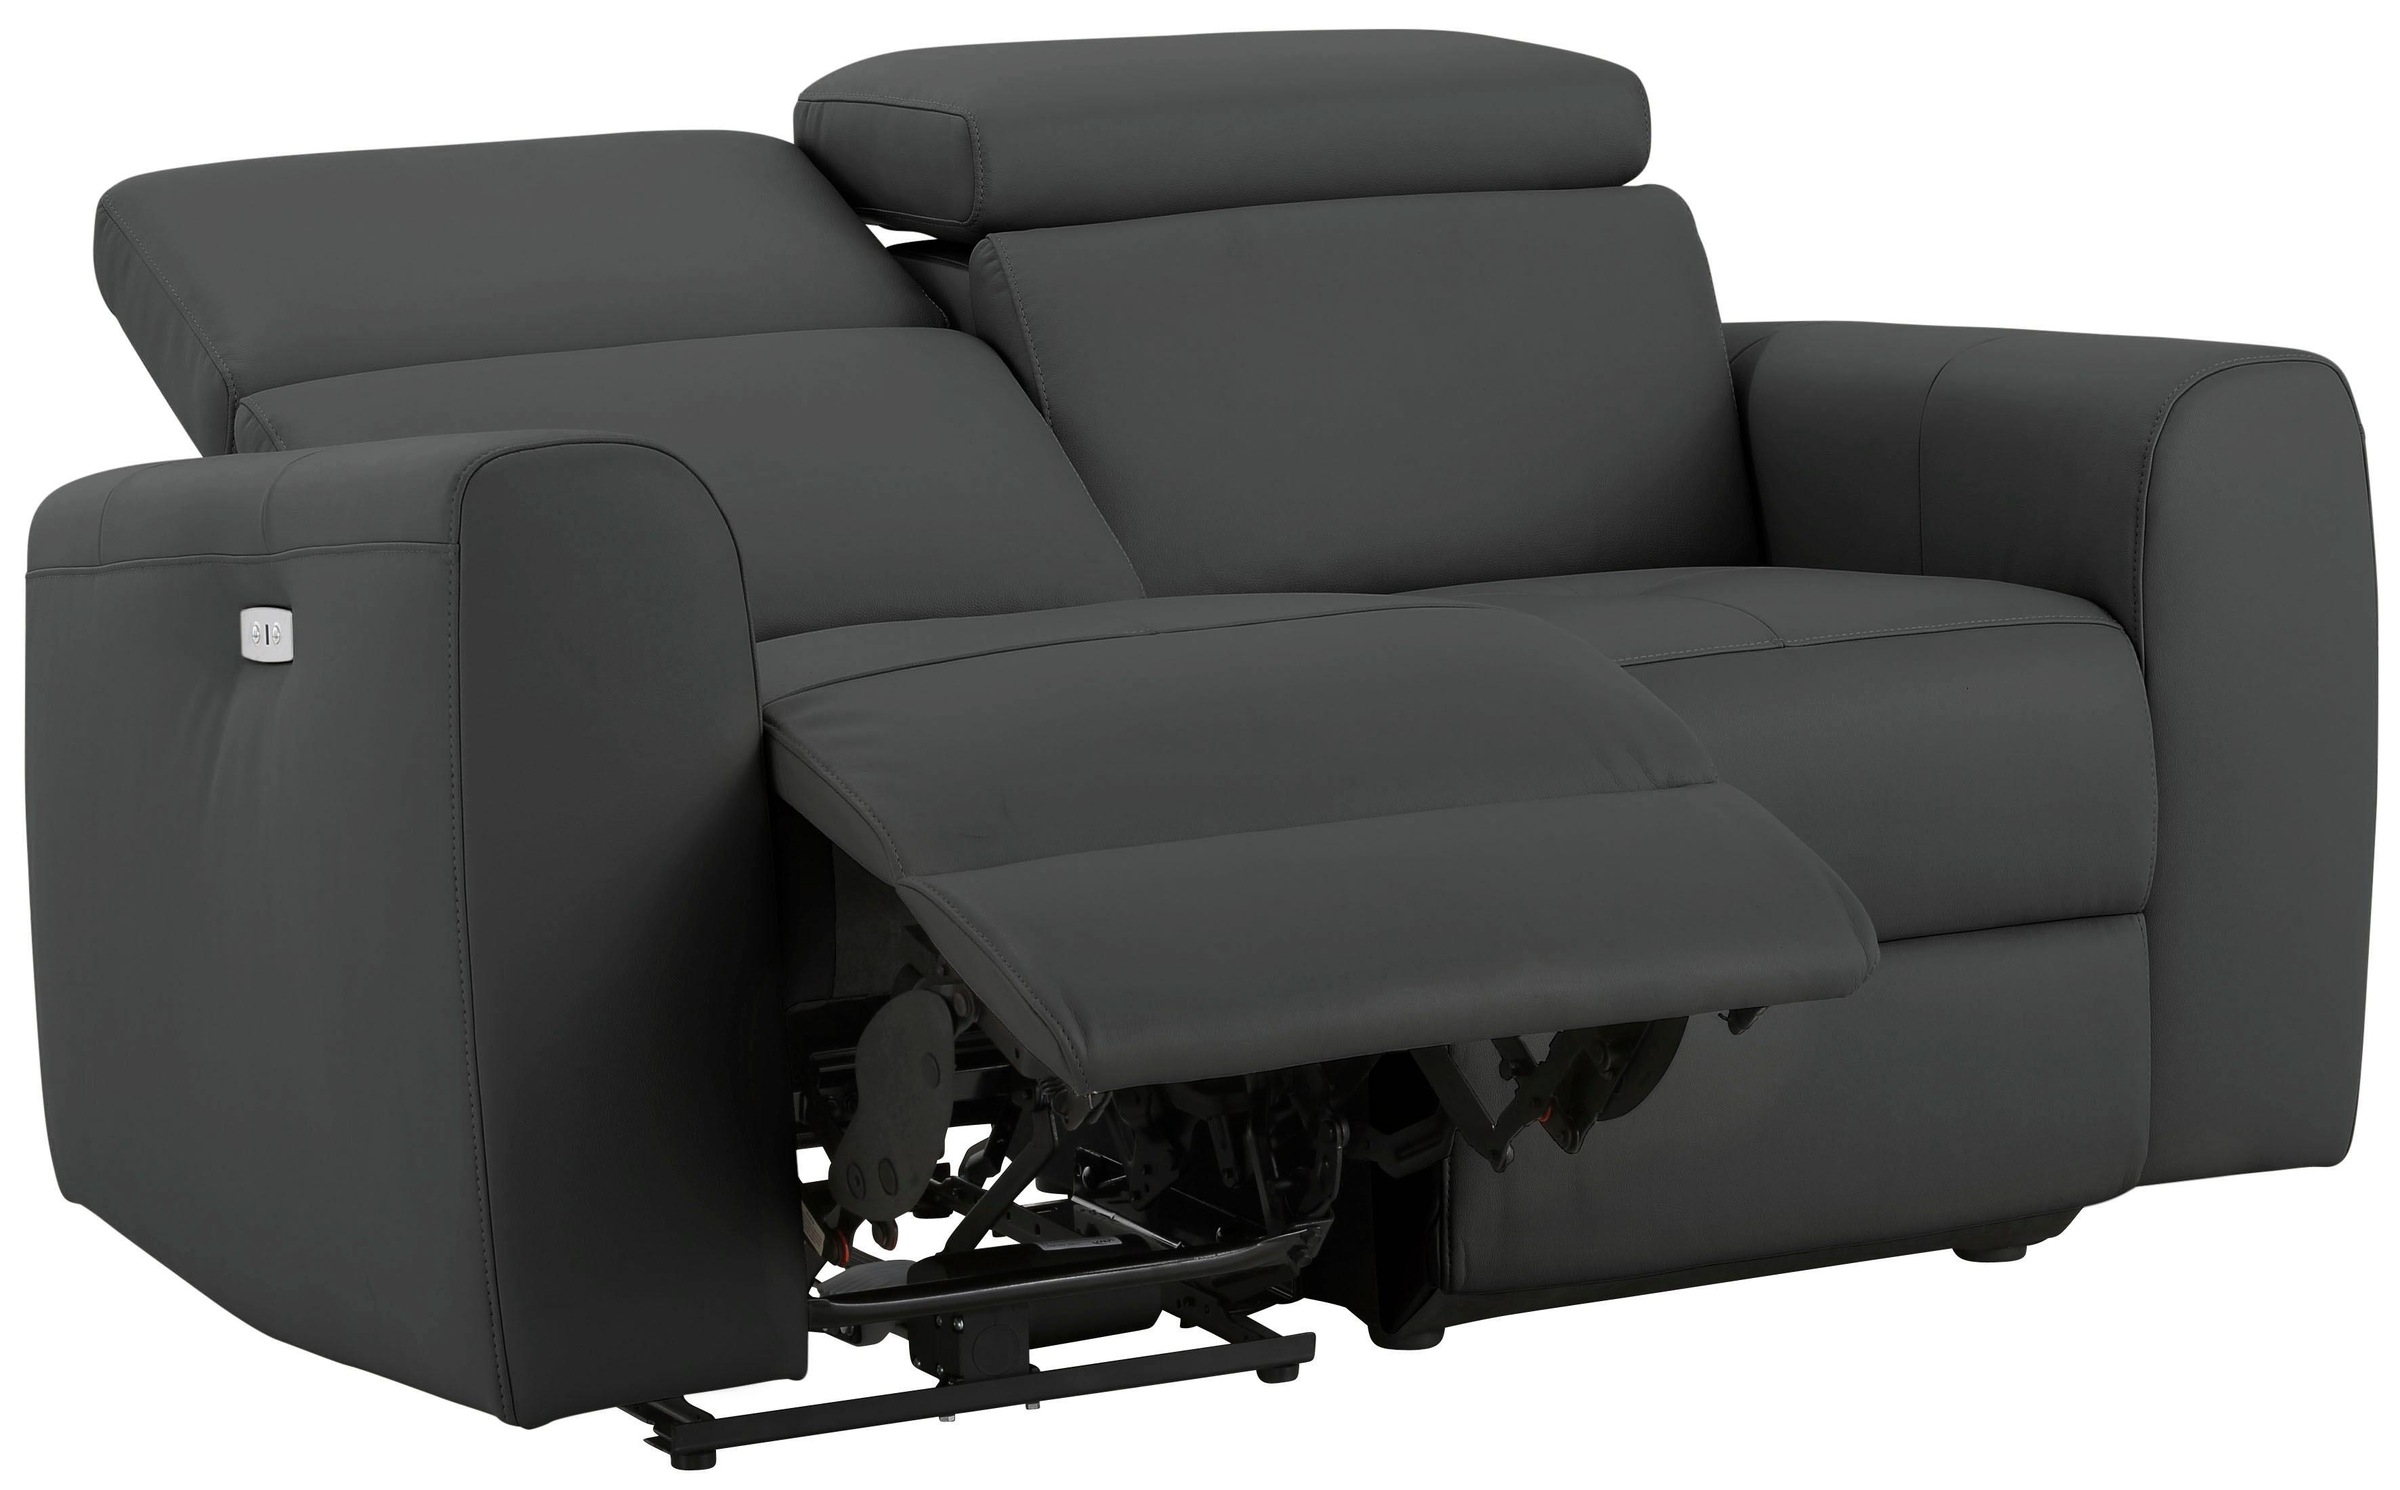 Home affaire 2-Sitzer »Sentrano«, auch mit elektrischer Funktion mit USB-Anschluß, in 4 Bezugsvarianten